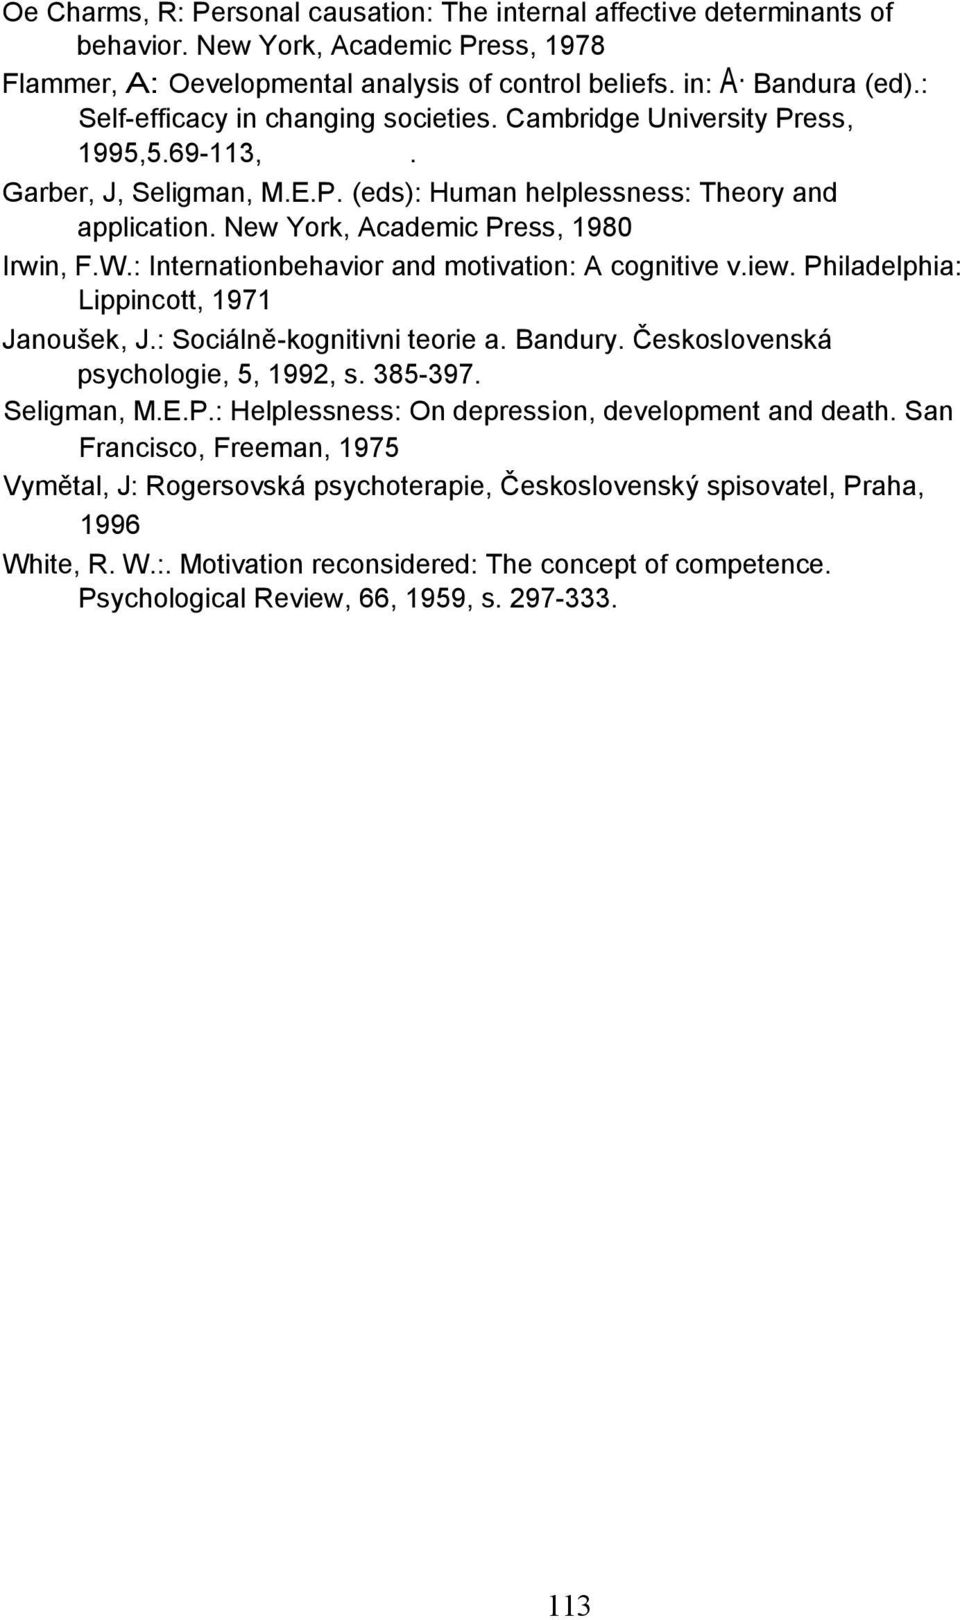 New York, Academic Press, 1980 Irwin, F.W.: Internationbehavior and motivation: A cognitive v.iew. Philadelphia: Lippincott, 1971 Janoušek, J.: Sociálně-kognitivni teorie a. Bandury.